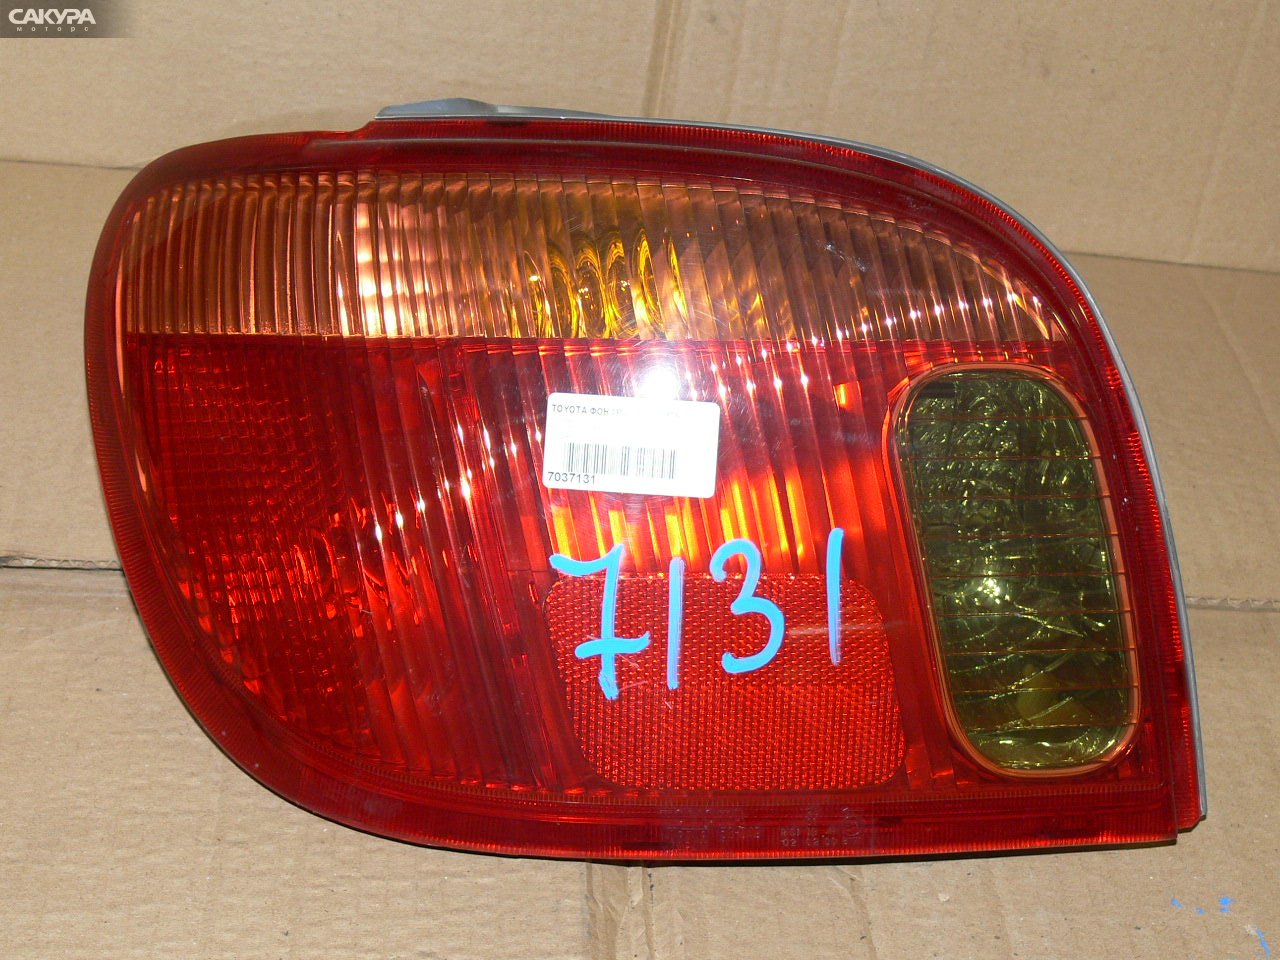 Фонарь стоп-сигнала левый Toyota Vitz SCP10 52-049: купить в Сакура Иркутск.